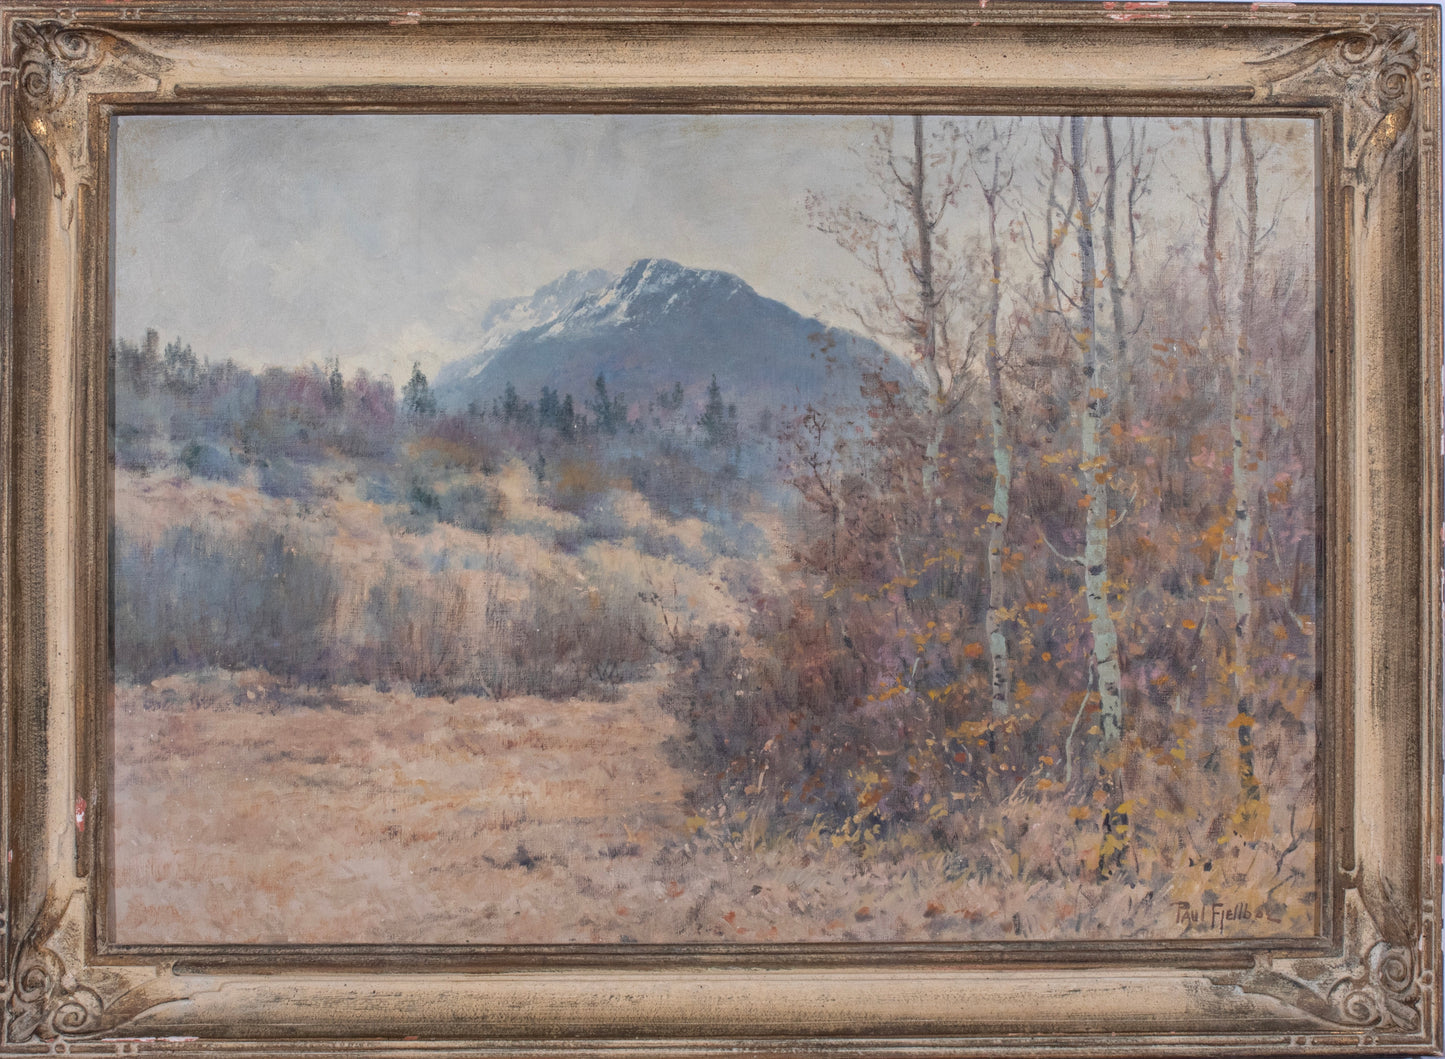 Paul Fjellboe - Western Mountain Landscape 21.5" x 31.5"